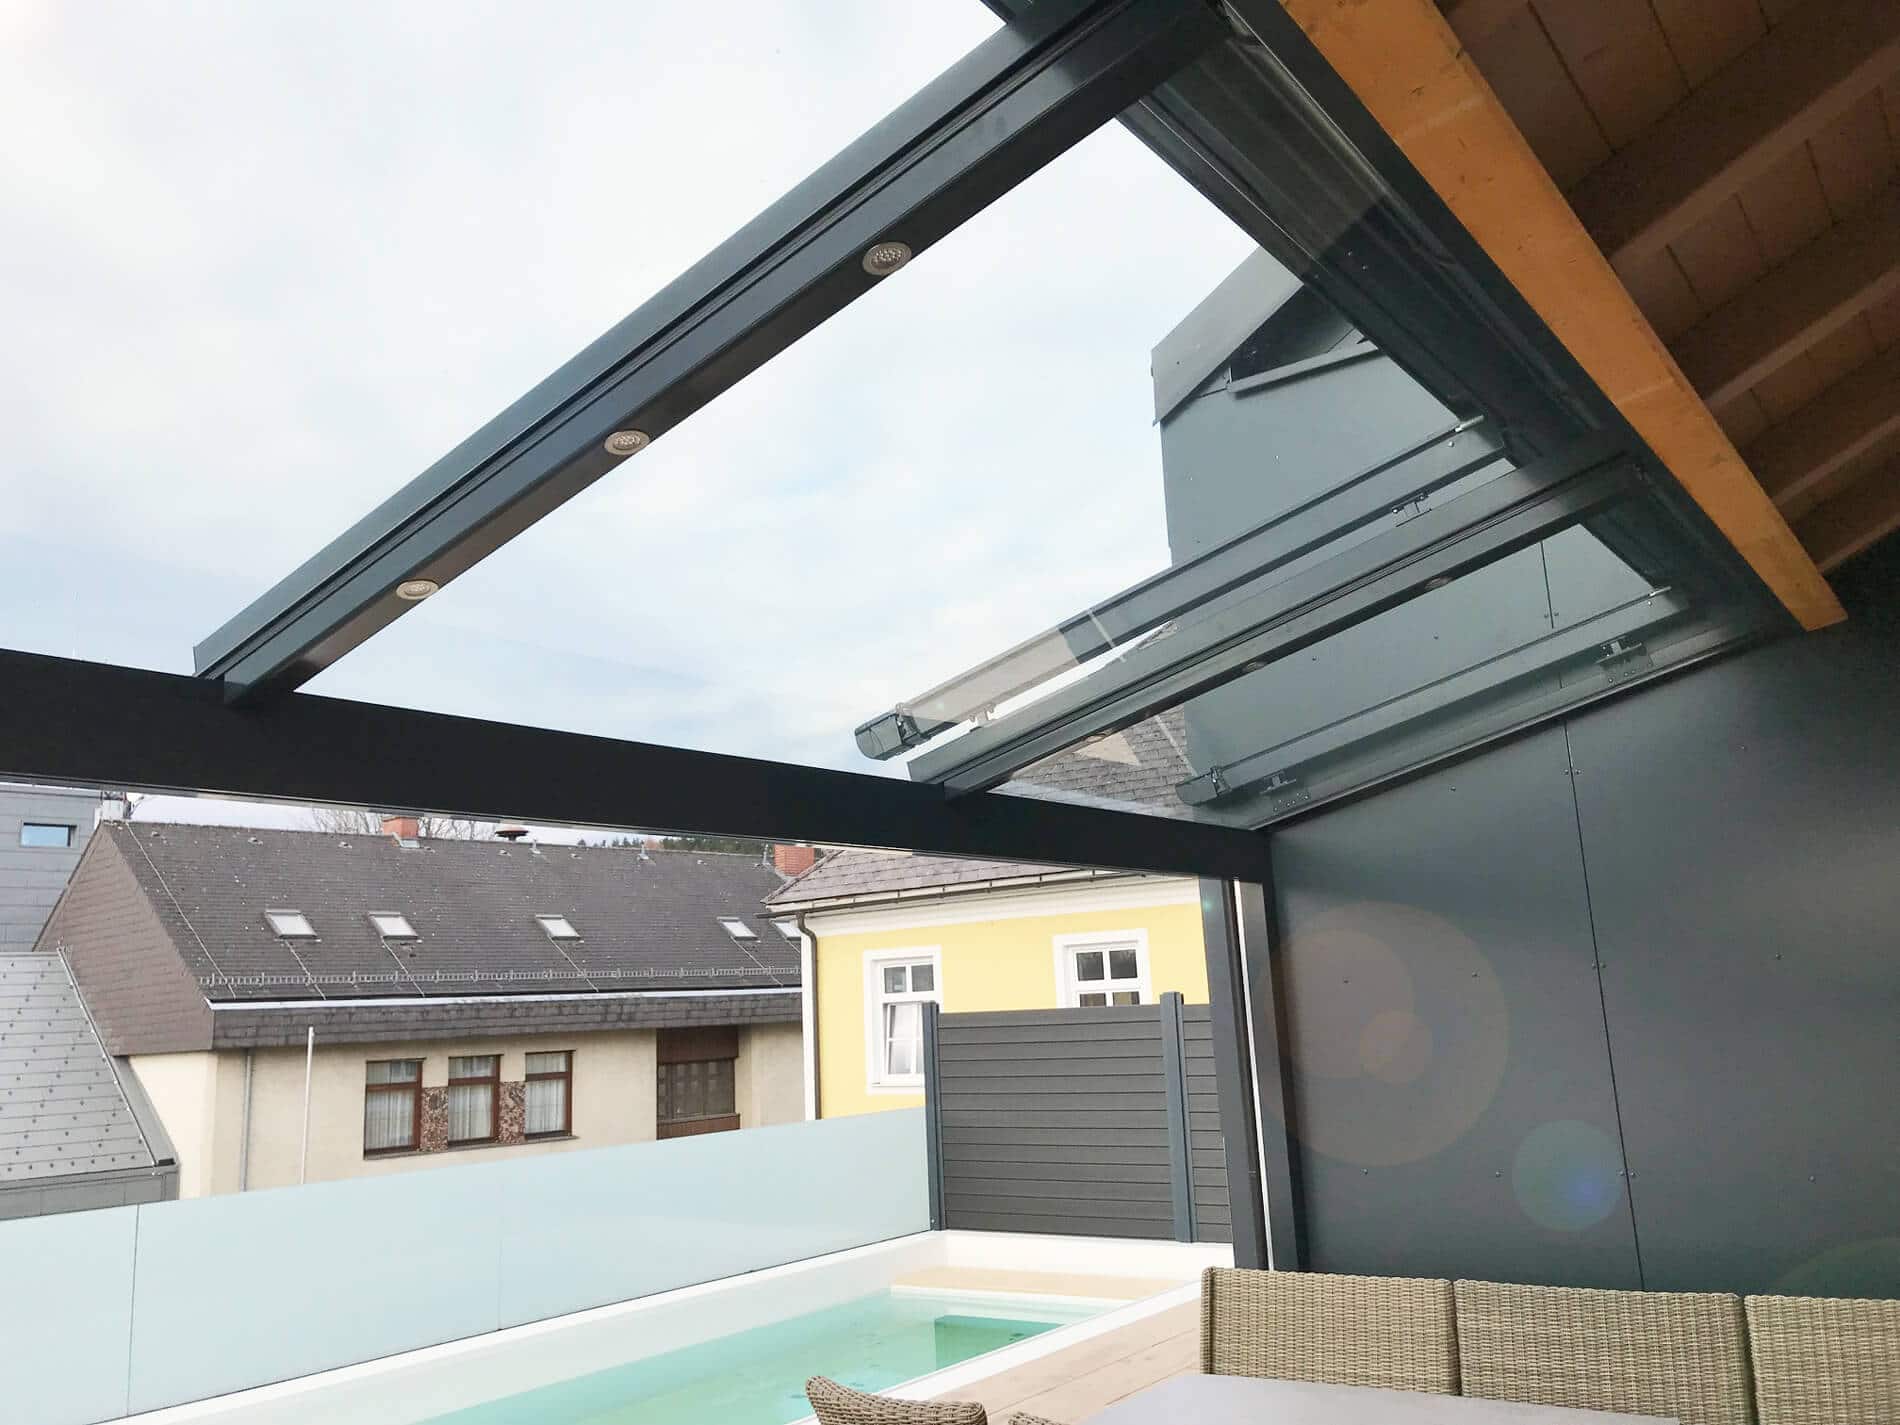 Terrassenüberdachung mit LED Leuchten und Dach-Glas - Farbe RAL 7016 anthrazit